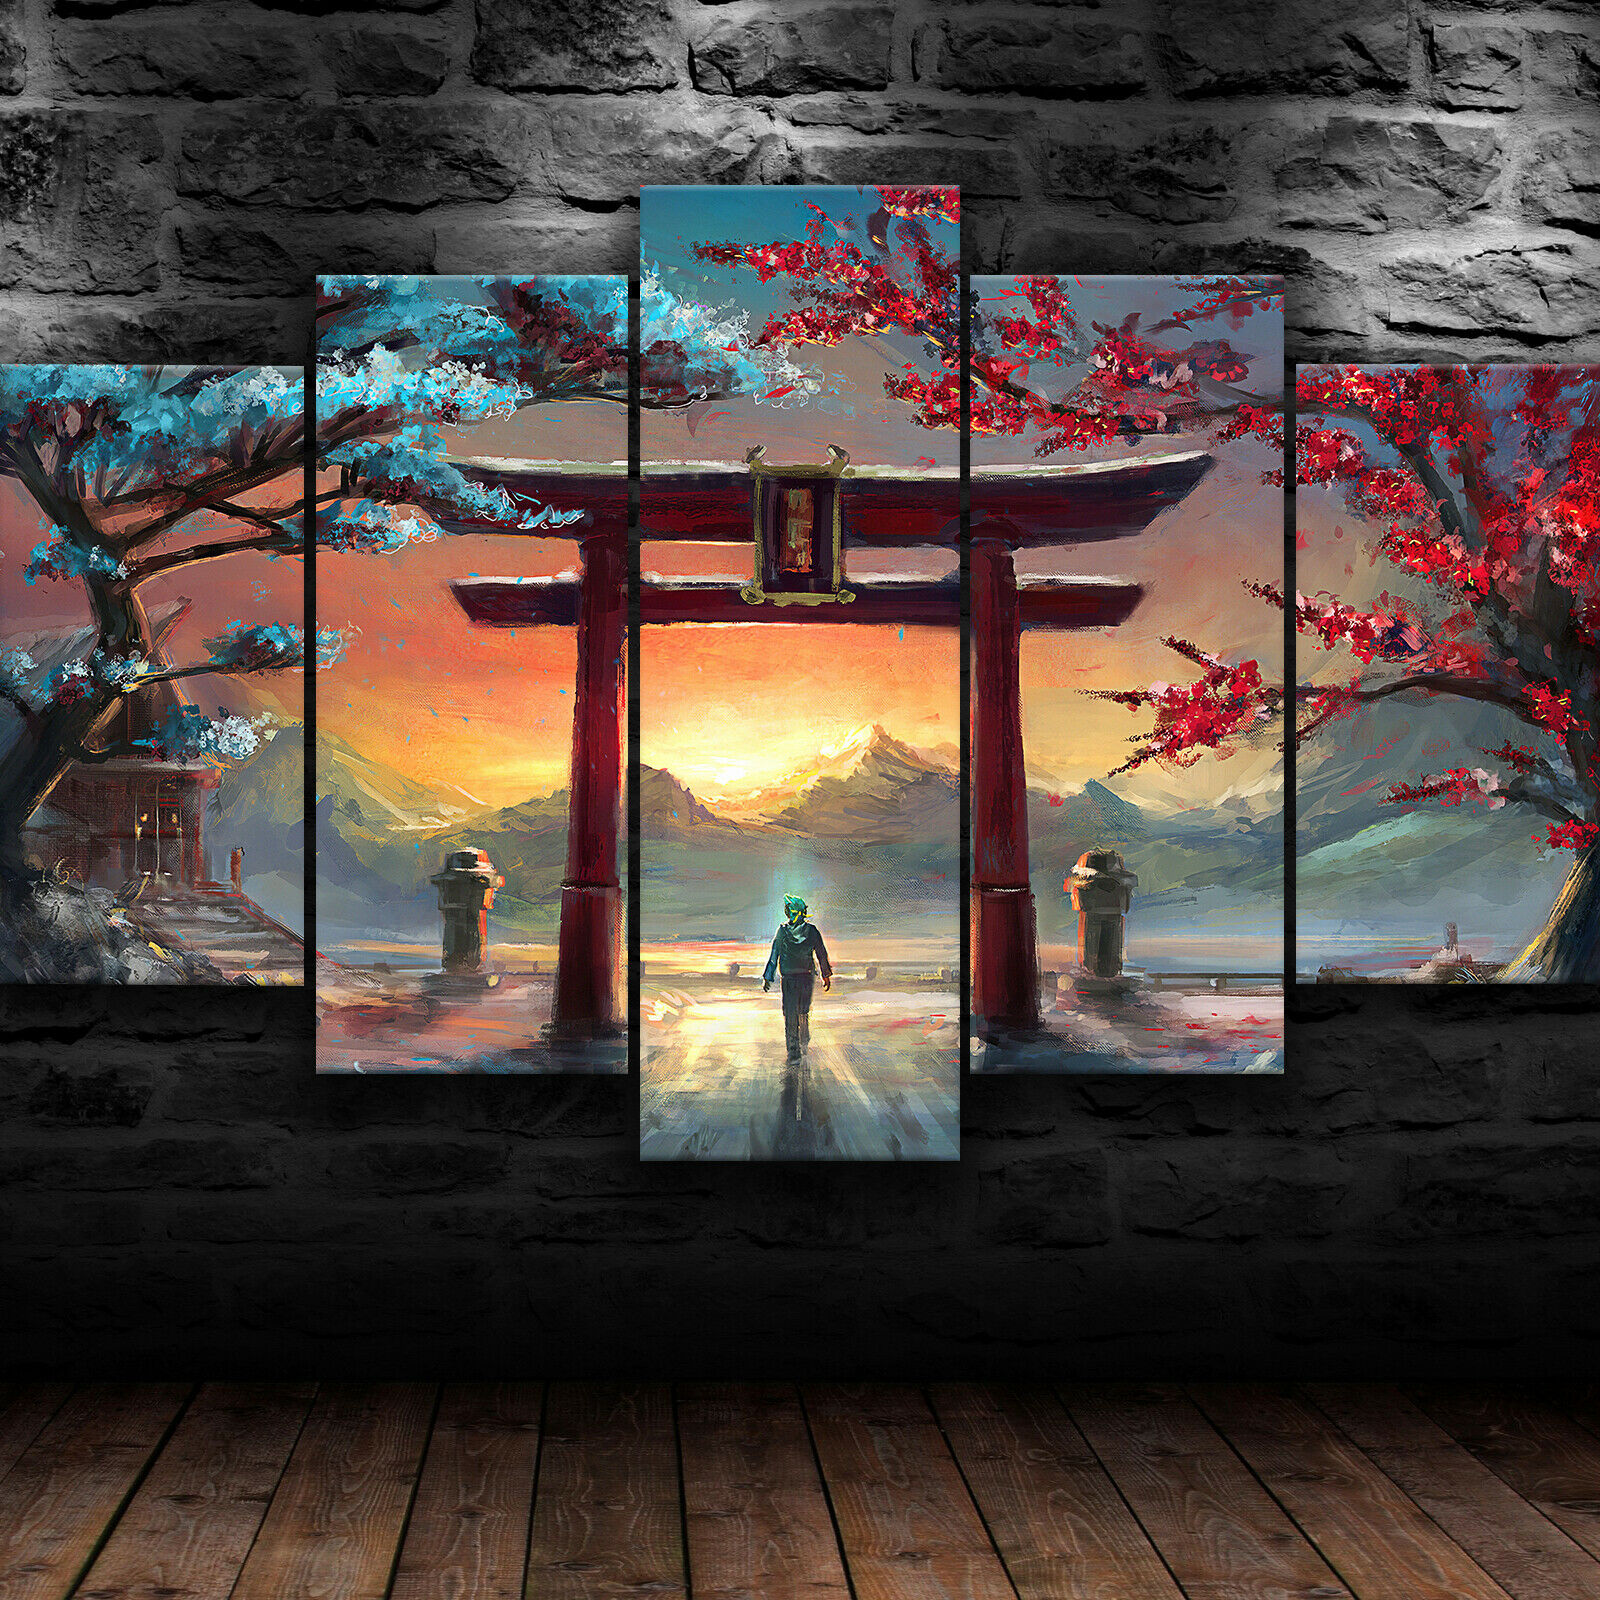 Torii Gate Paint Art Wallpapers